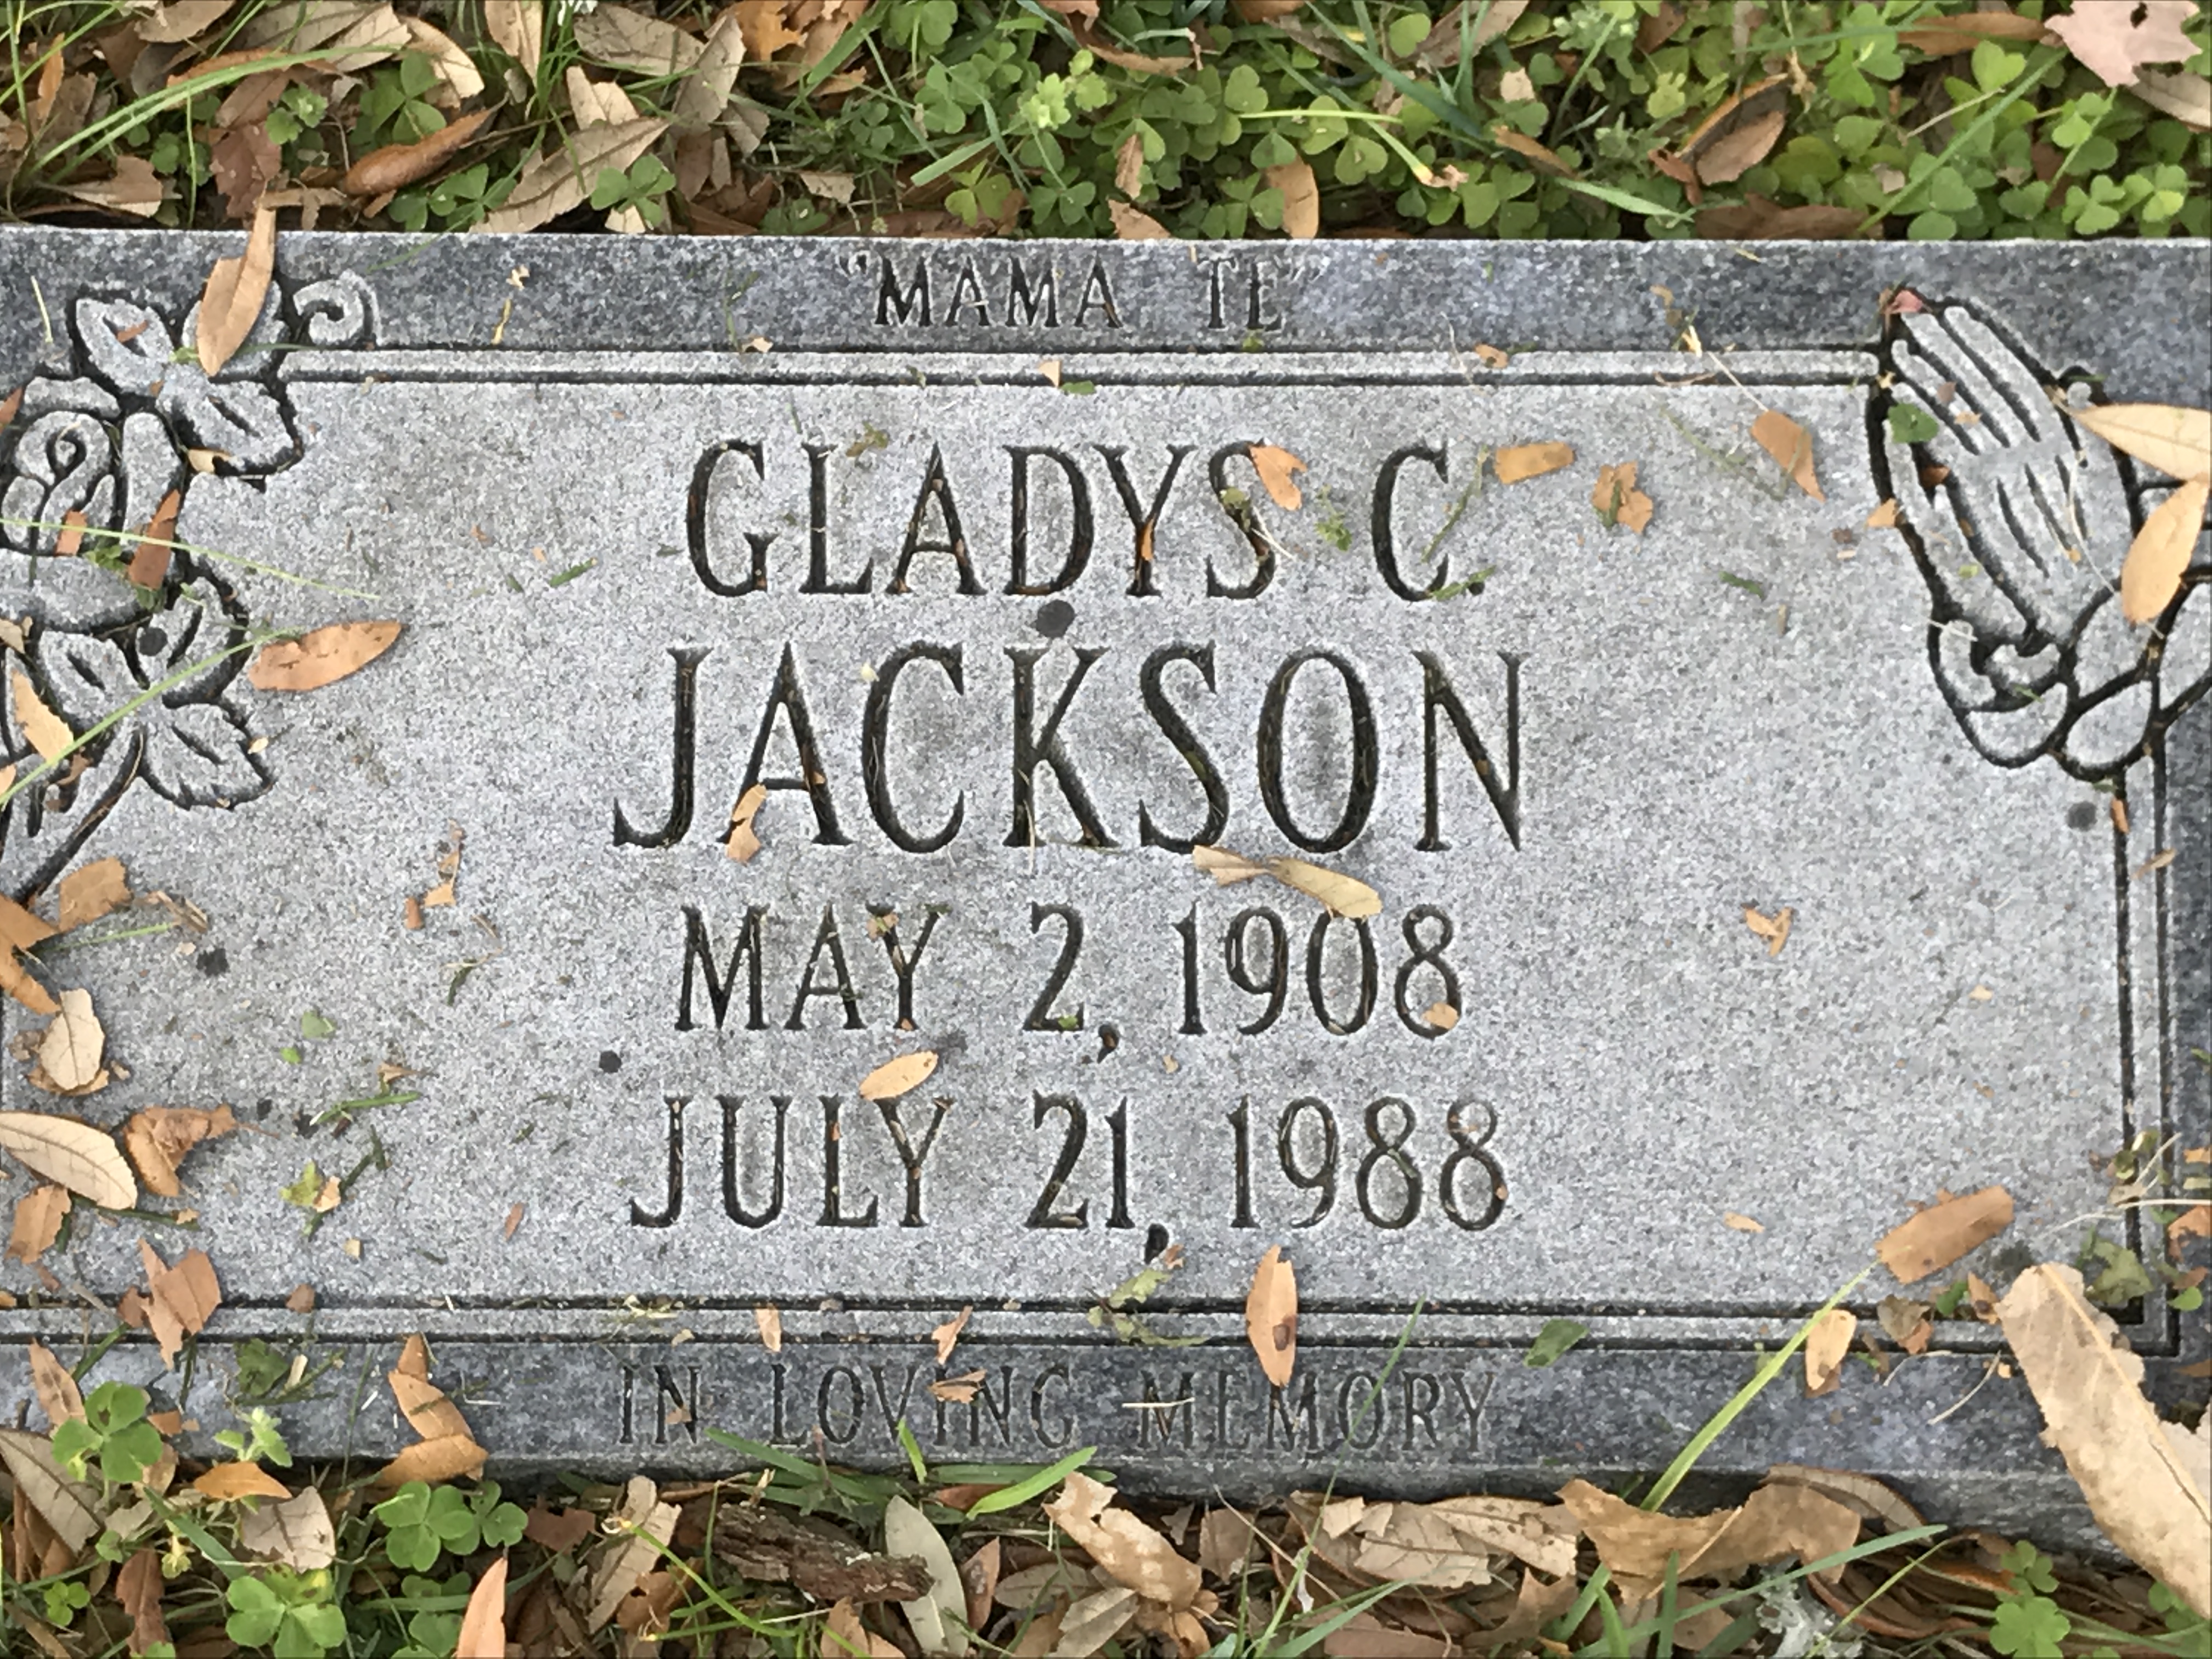 Gladys C. Jackson